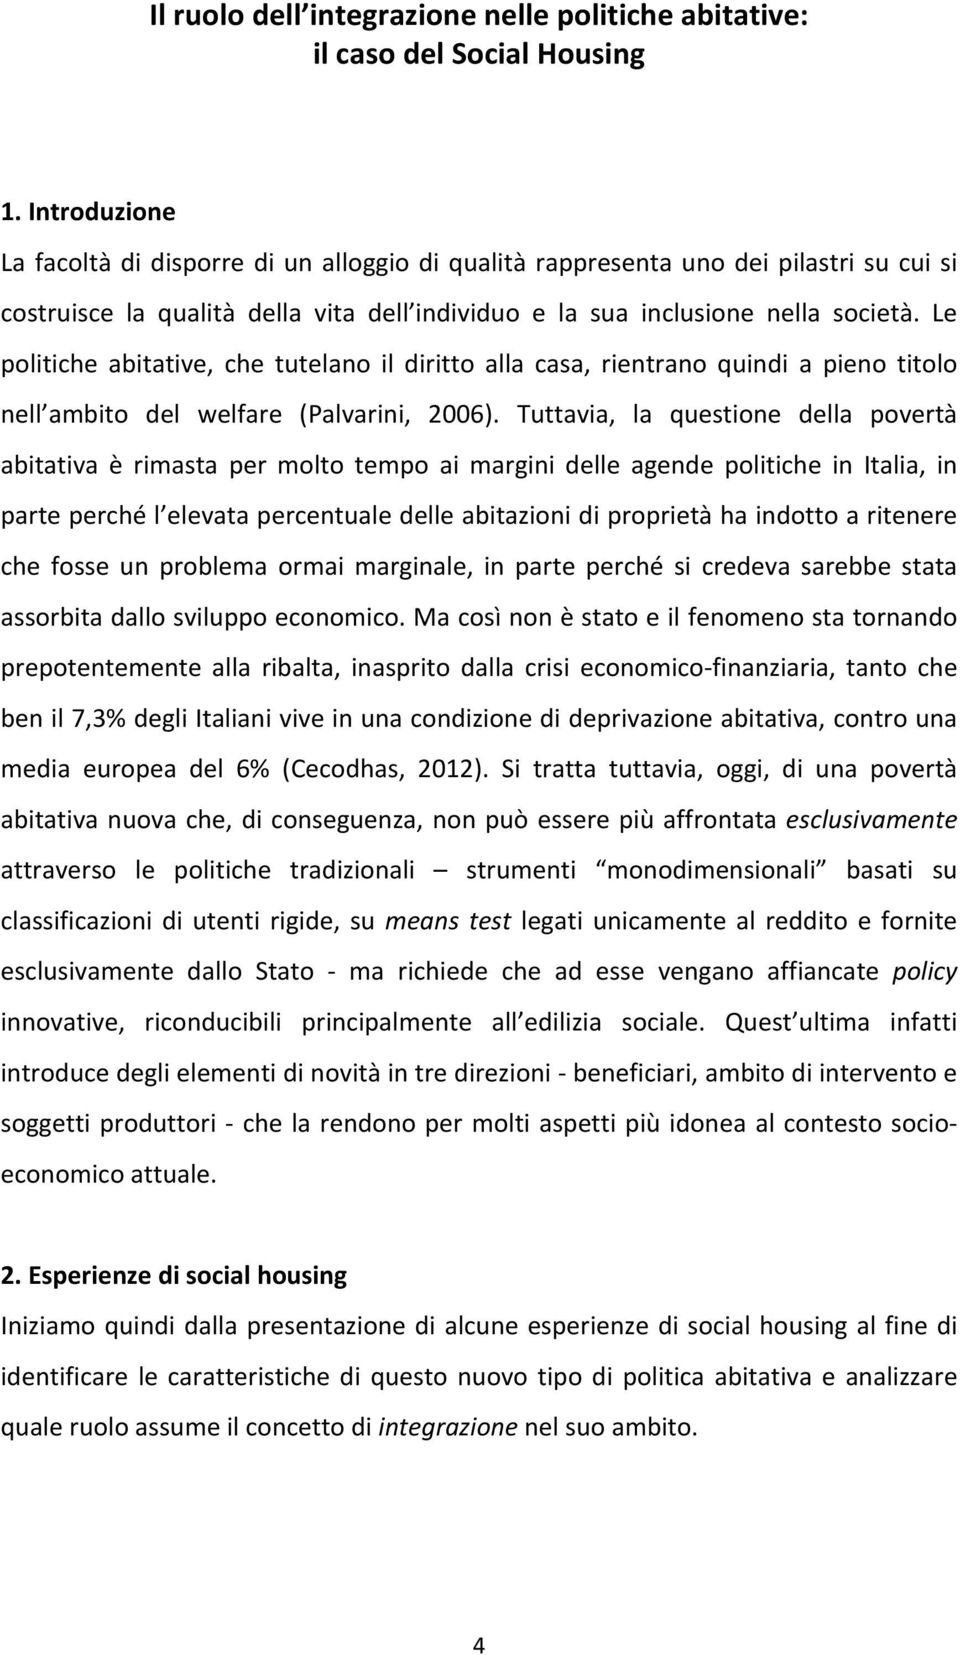 Le politiche abitative, che tutelano il diritto alla casa, rientrano quindi a pieno titolo nell ambito del welfare (Palvarini, 2006).